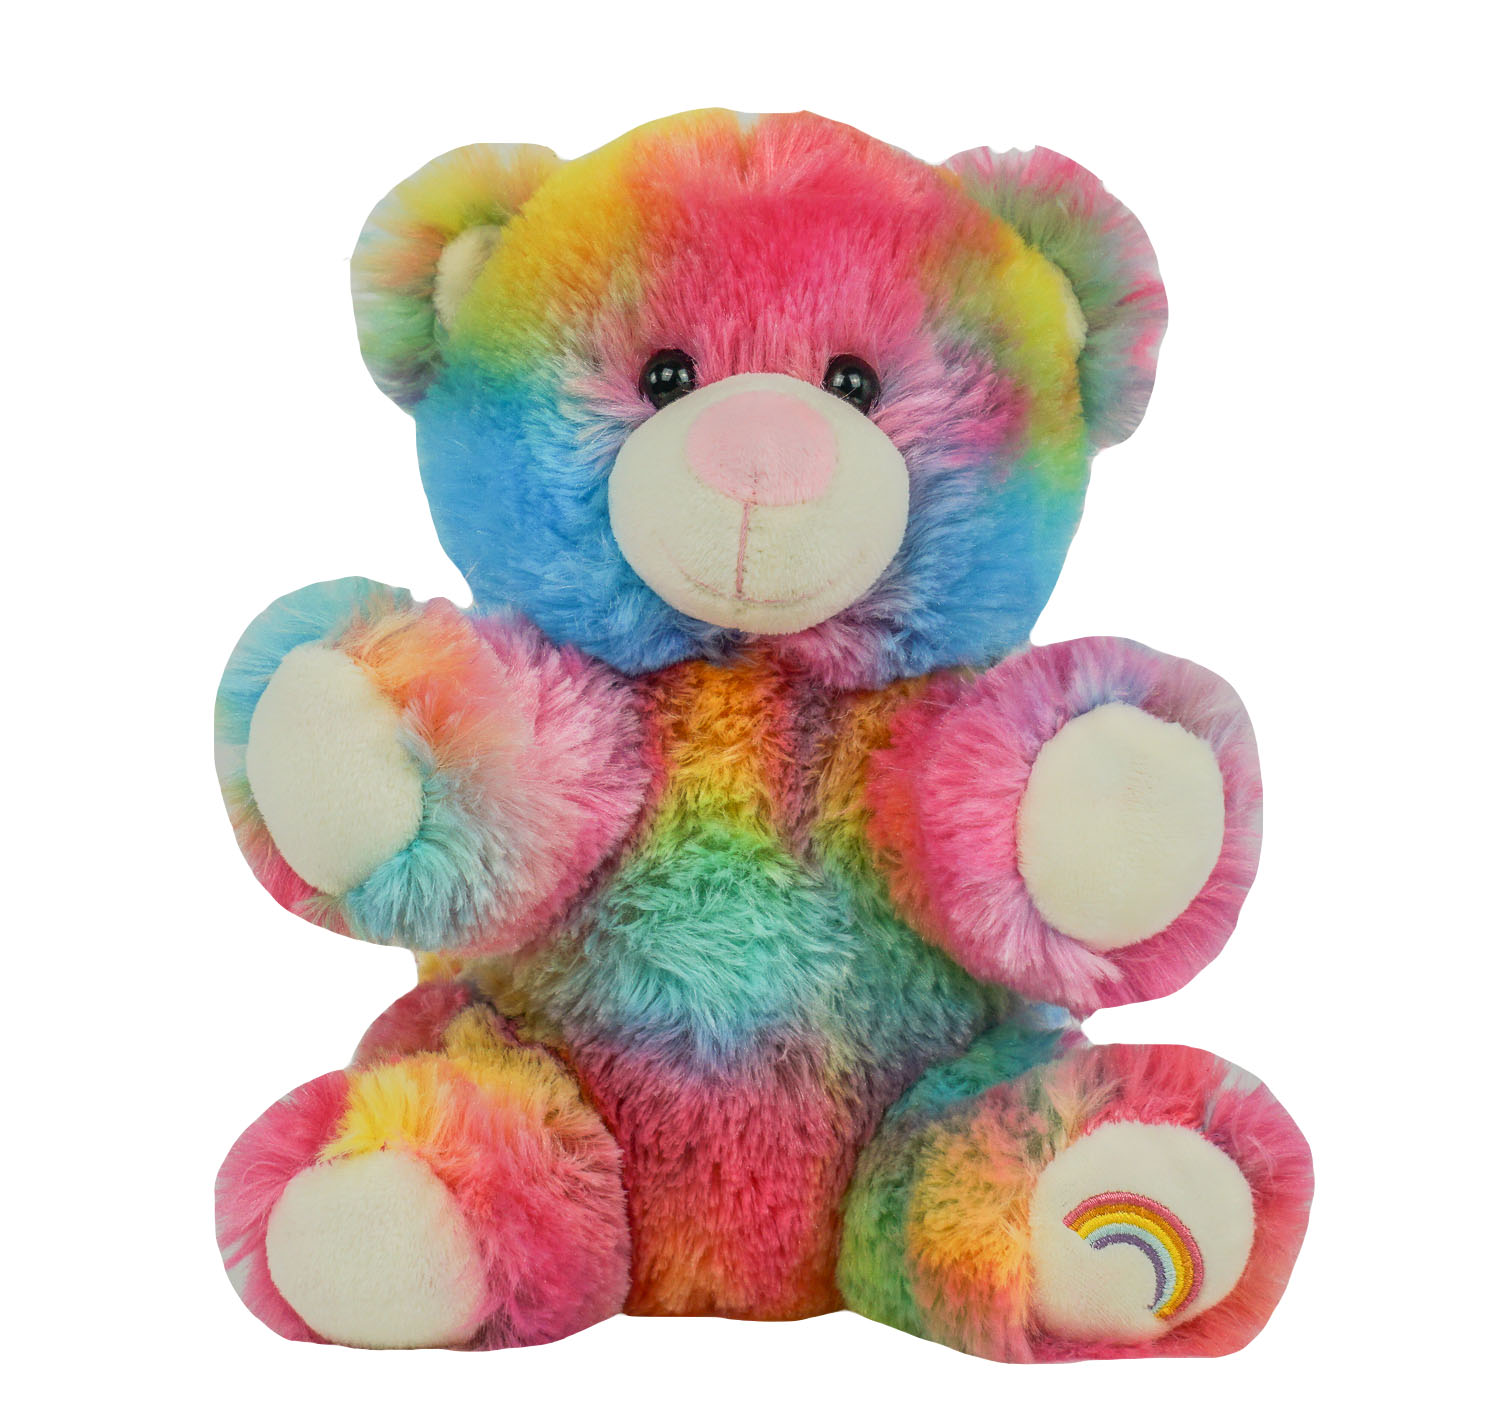 rainbow teddy bear